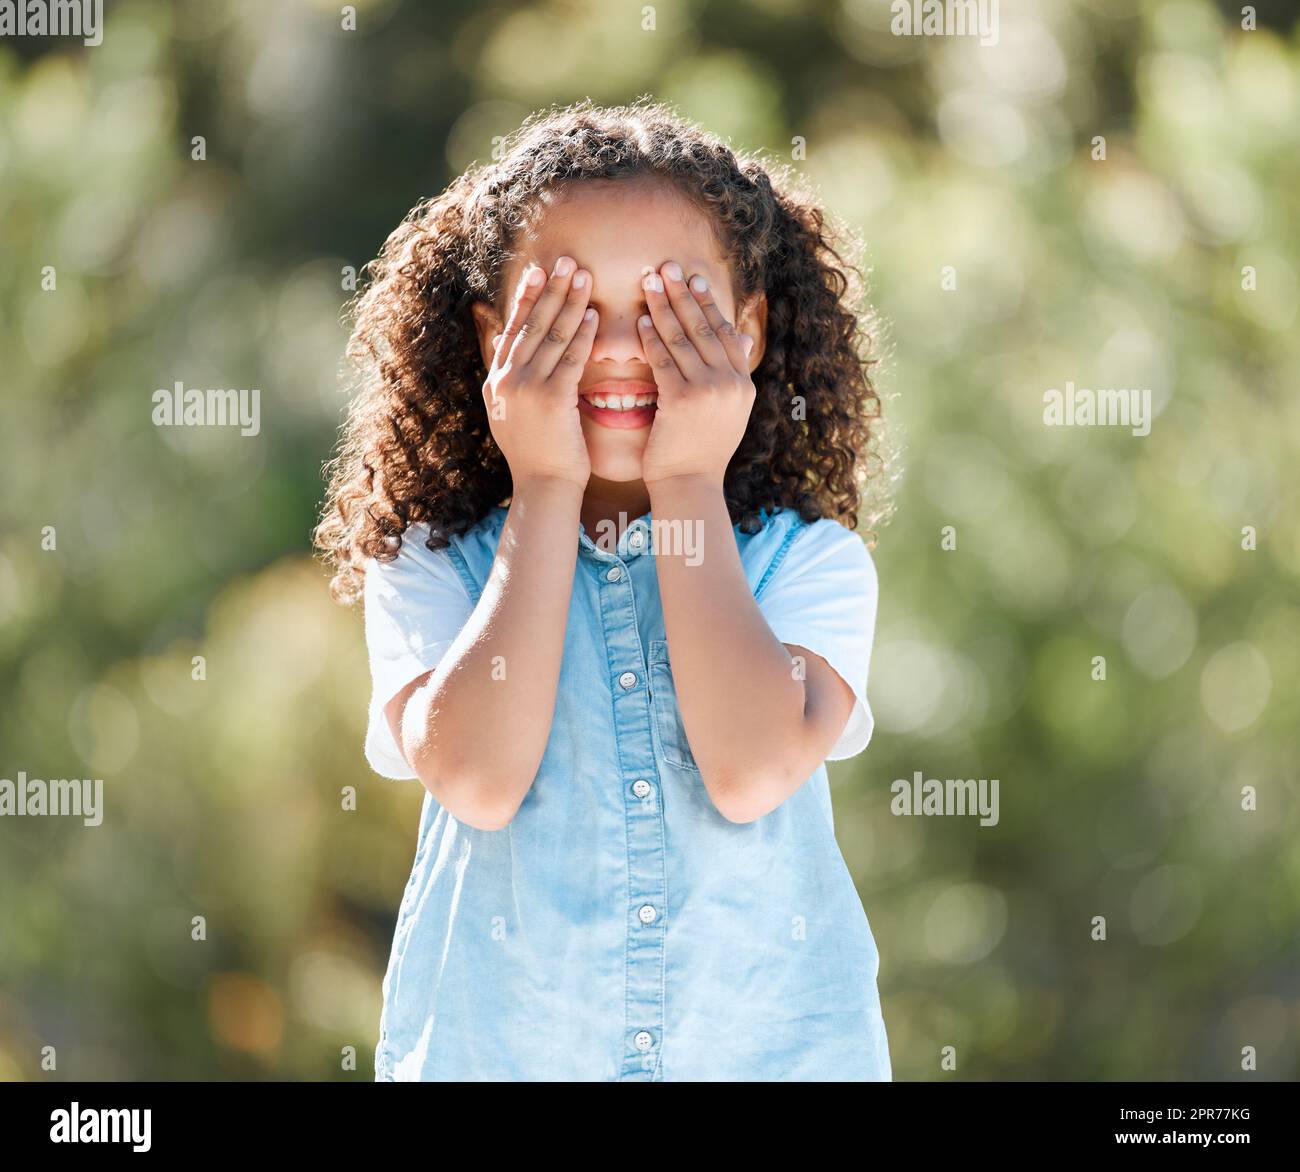 Lassen Sie spielen Verstecken und suchen. Aufnahme eines entzückenden kleinen Mädchens, das ihre Augen bedeckt, während es draußen steht. Stockfoto